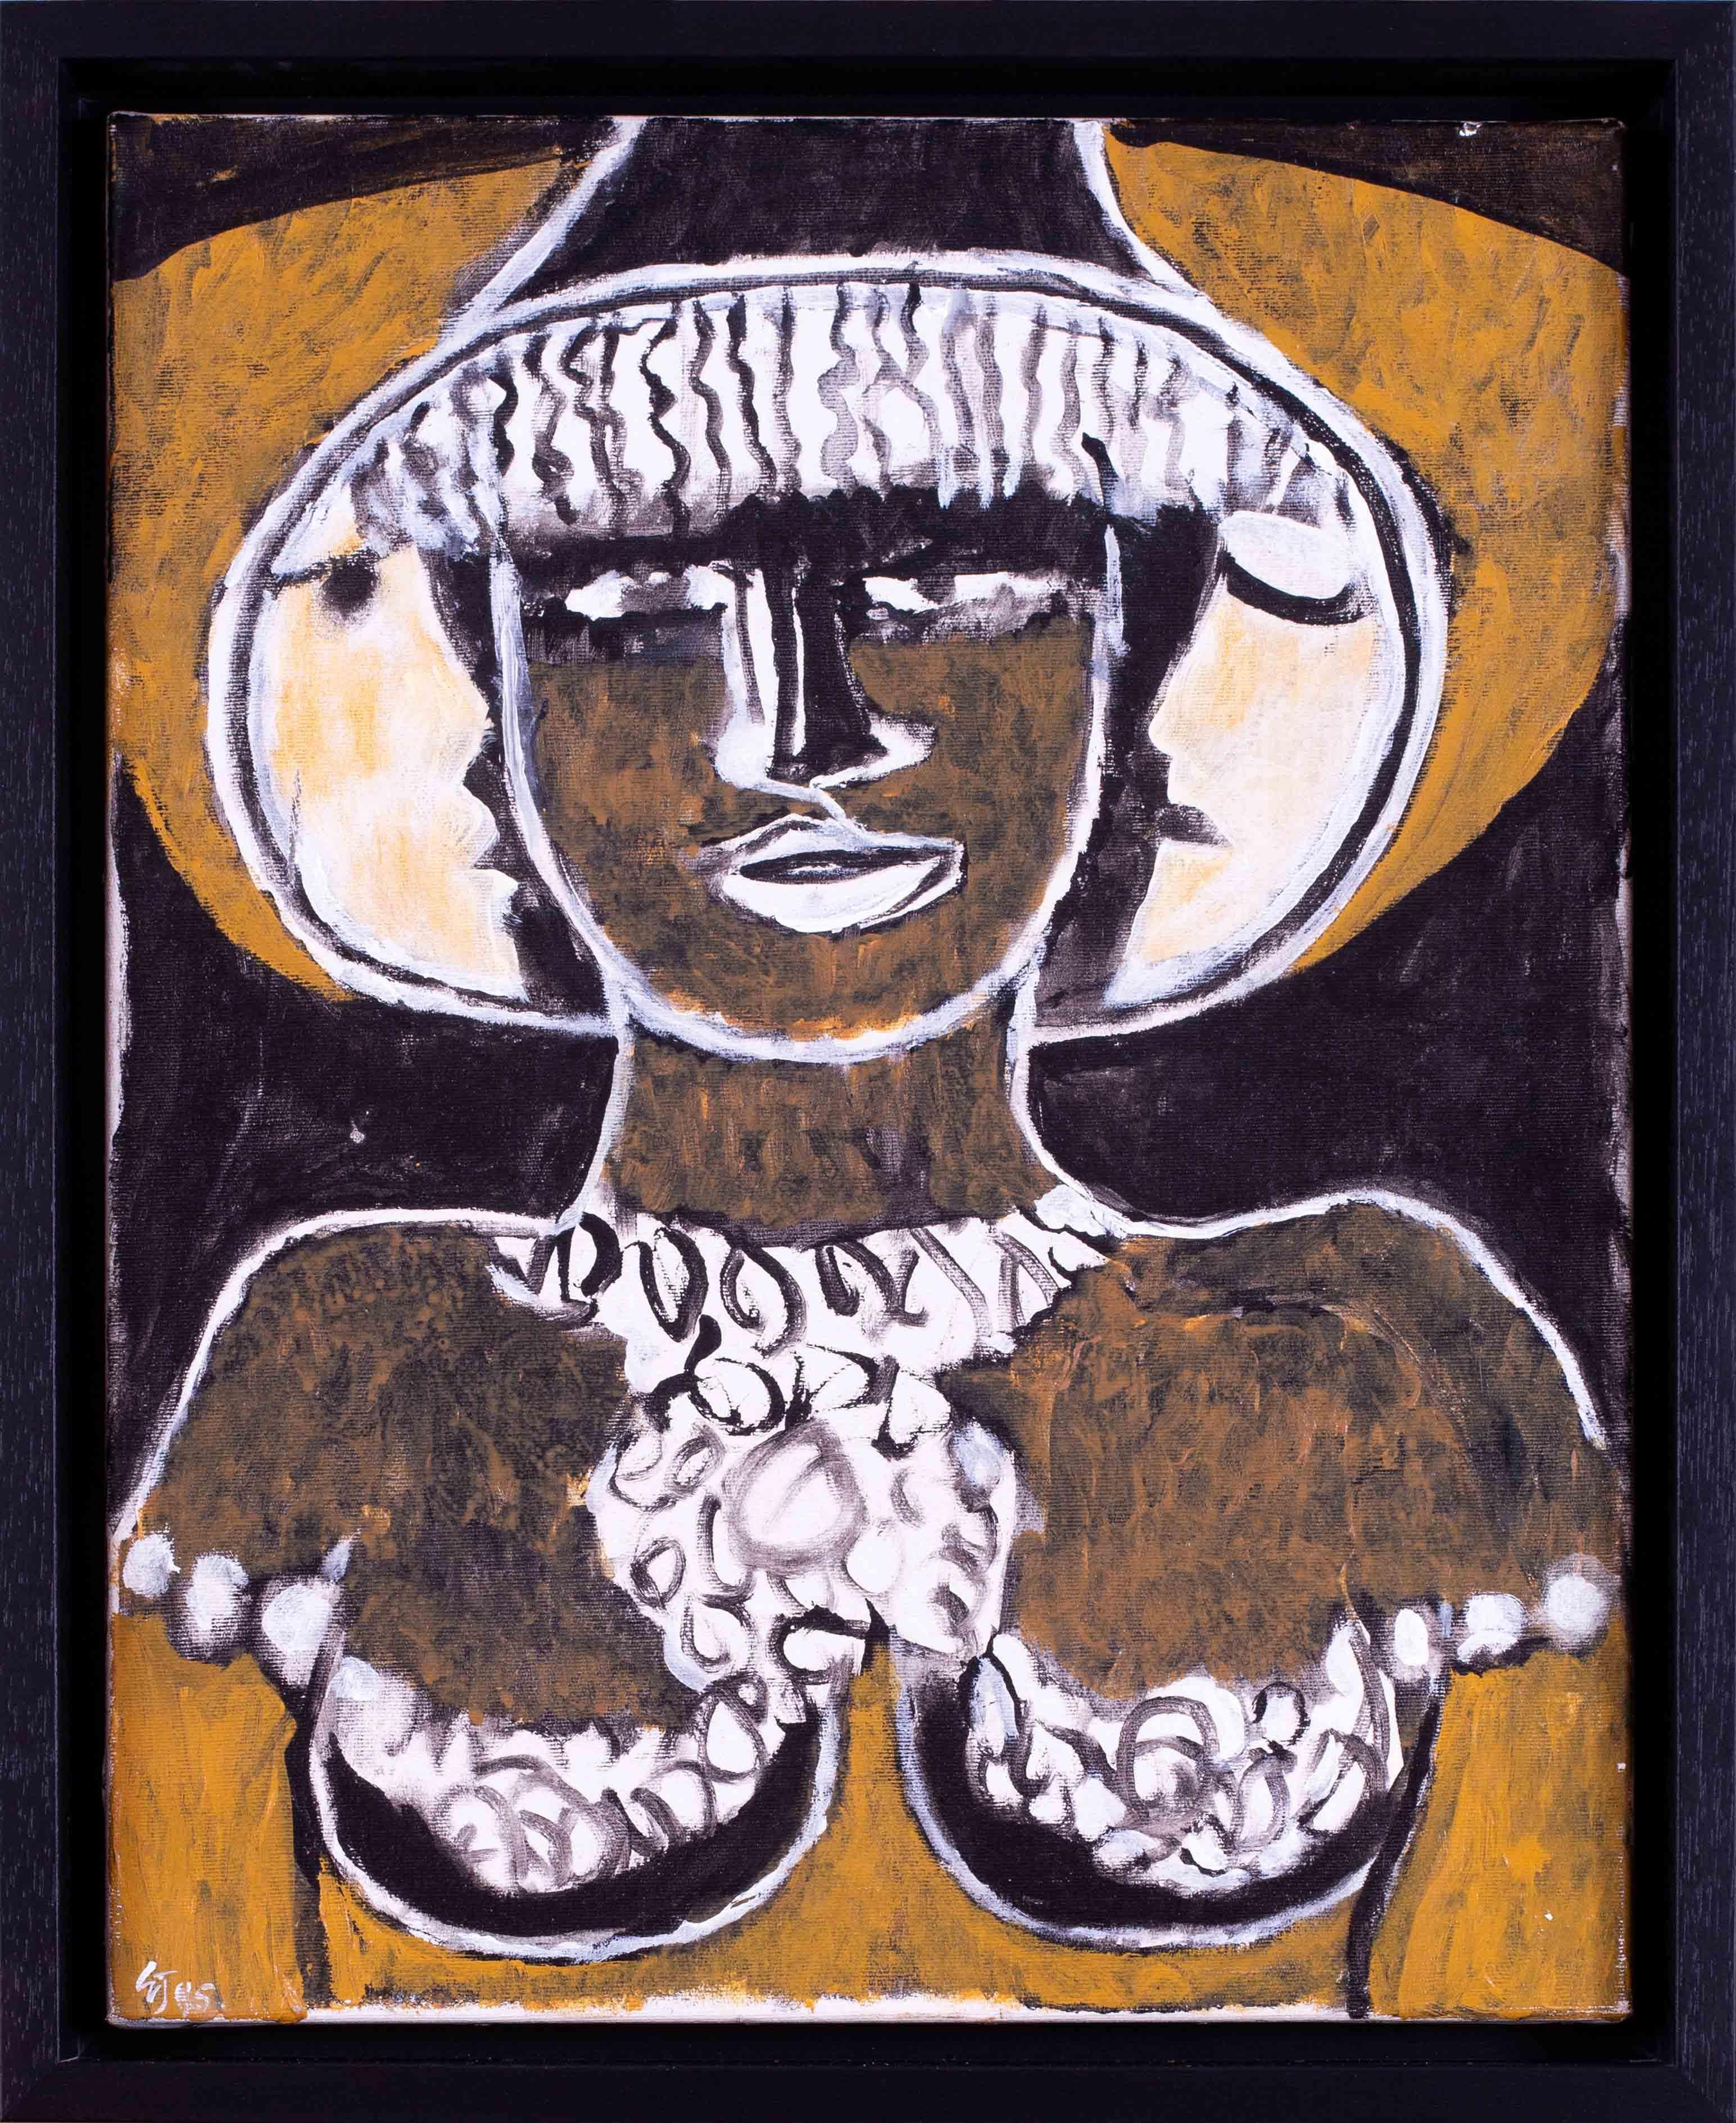 Ein kühnes und auffälliges Porträt "Black Hecate" des bedeutenden modernen britischen Künstlers Ewart Johns.  Dieses Gemälde zeichnet sich durch eine Farbkombination aus Weiß, Schwarz und Braun und eine selbstbewusste Pinselführung aus. 

Ewart